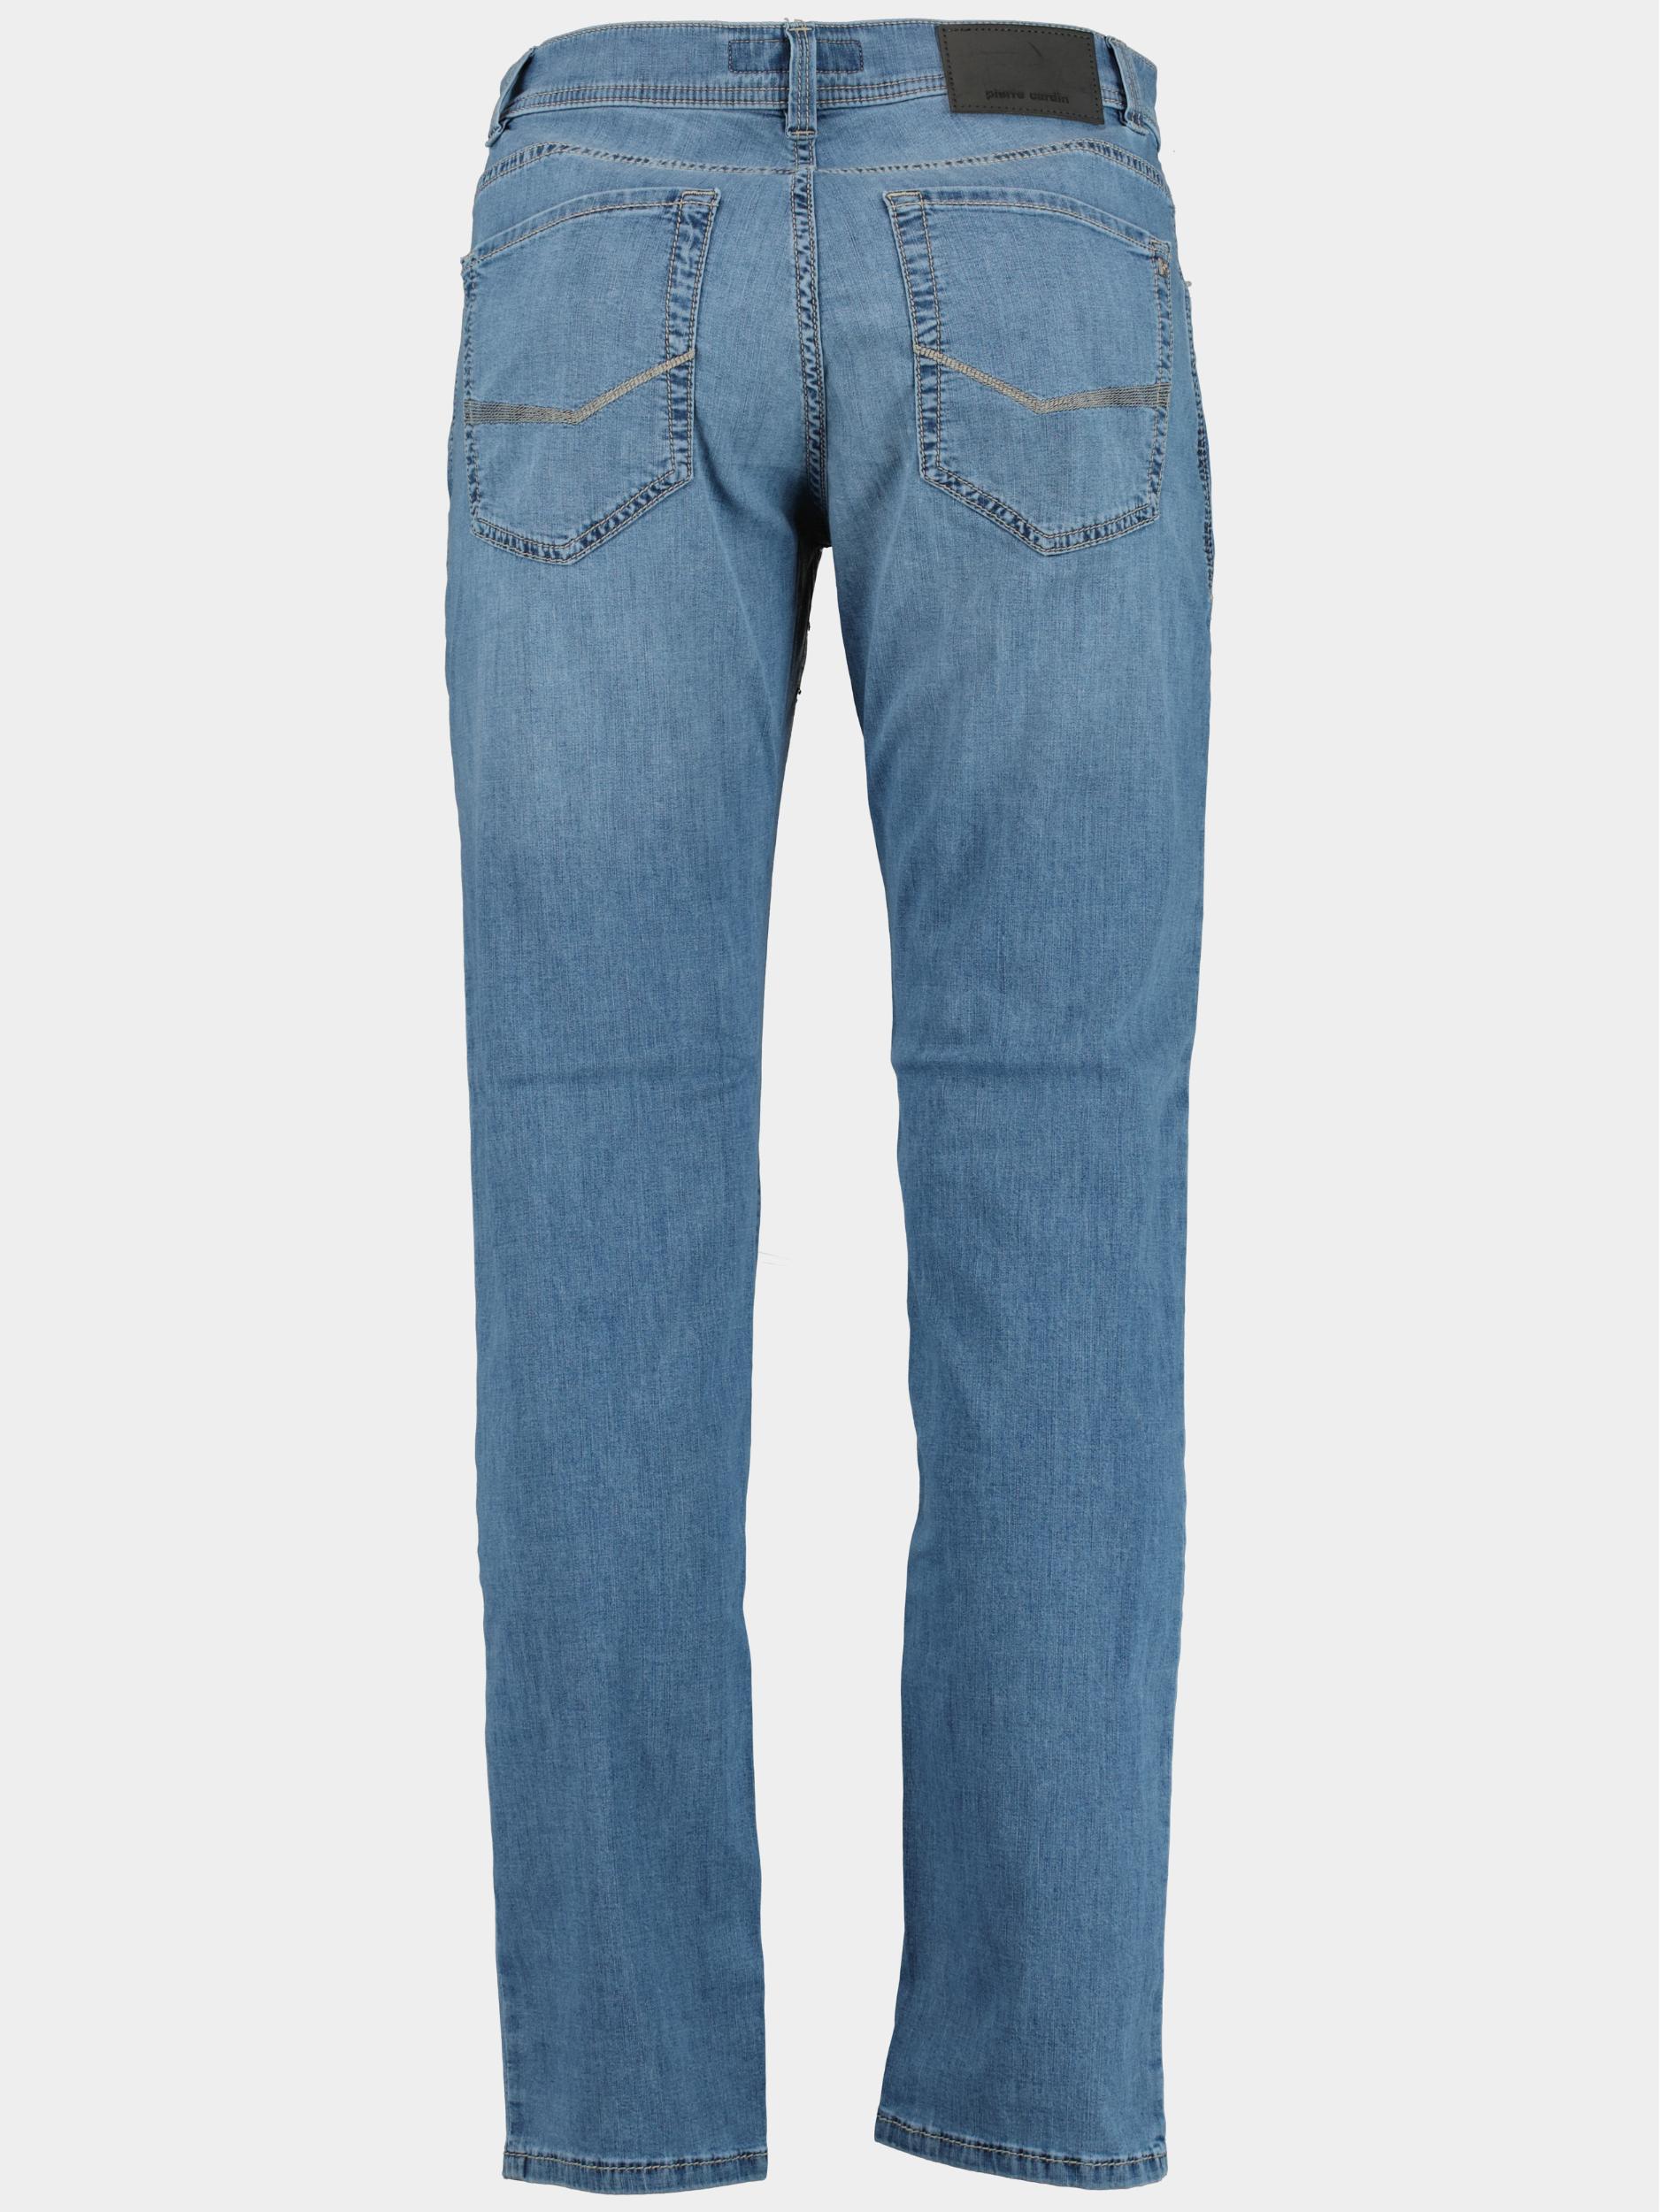 Pierre Cardin 5-Pocket Jeans Blauw  C7 34510.7730/6847